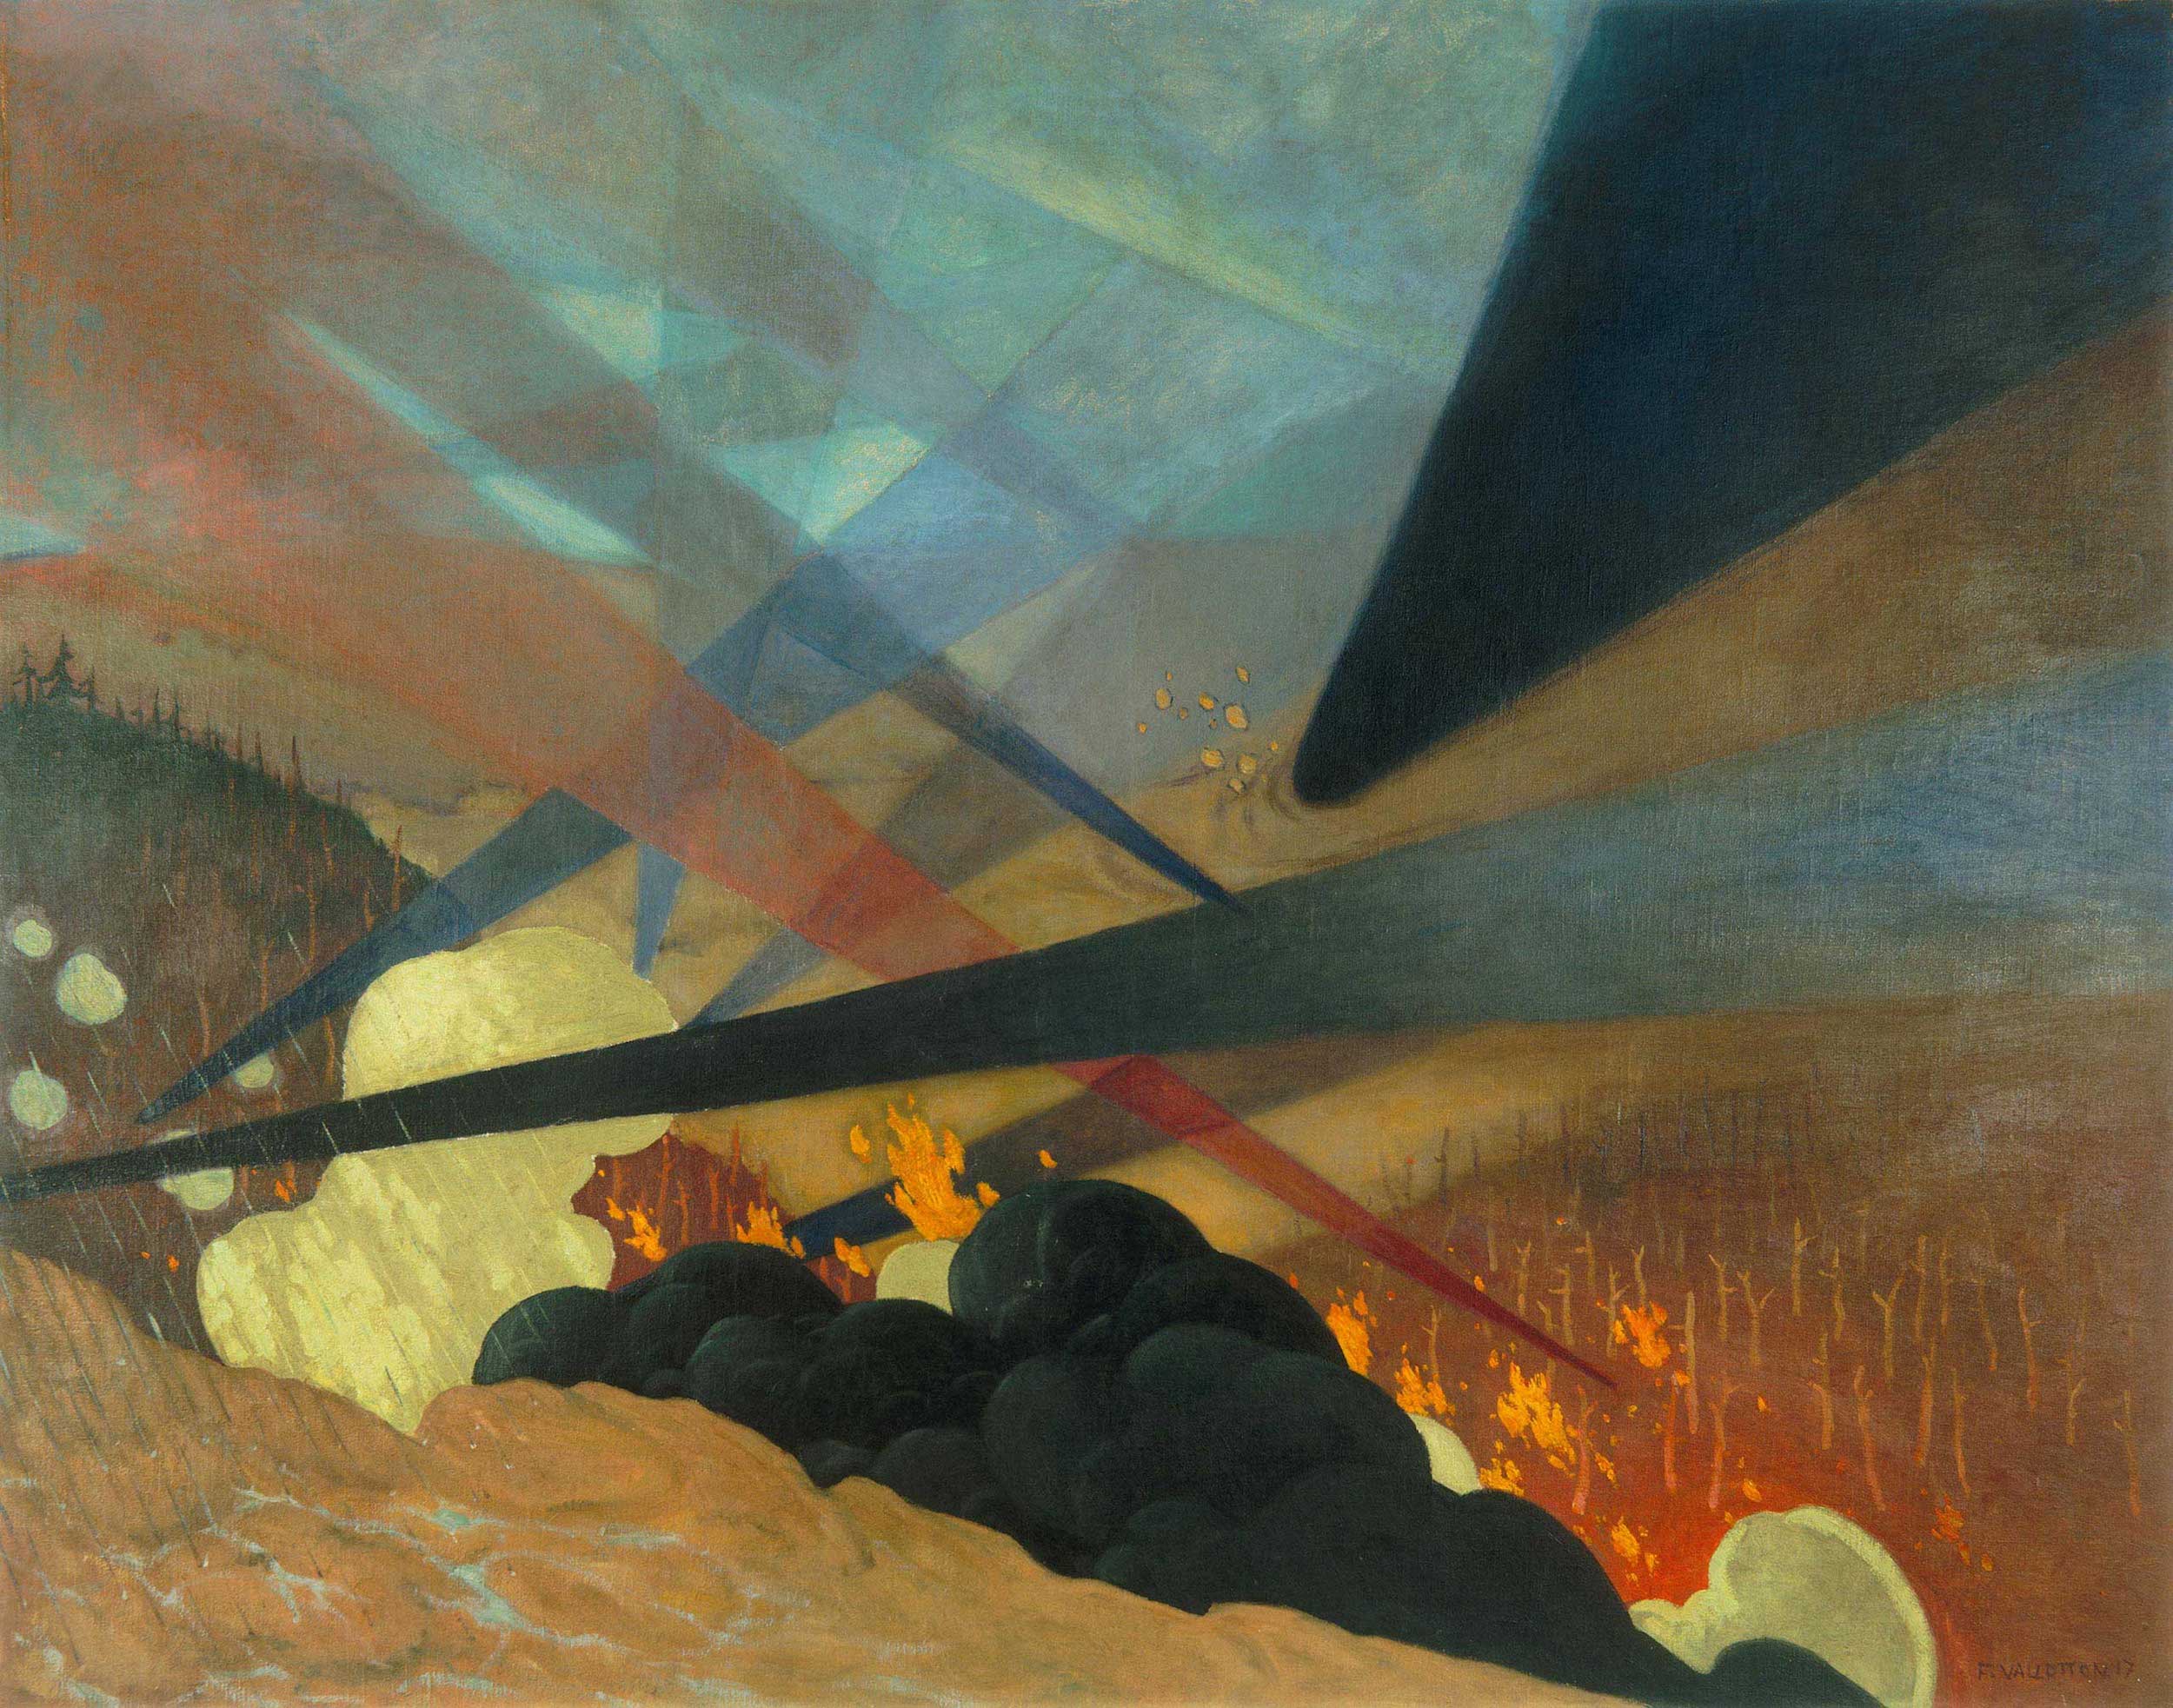 ヴェルダン by Félix Vallotton - 1917 - 114 x 146 cm 